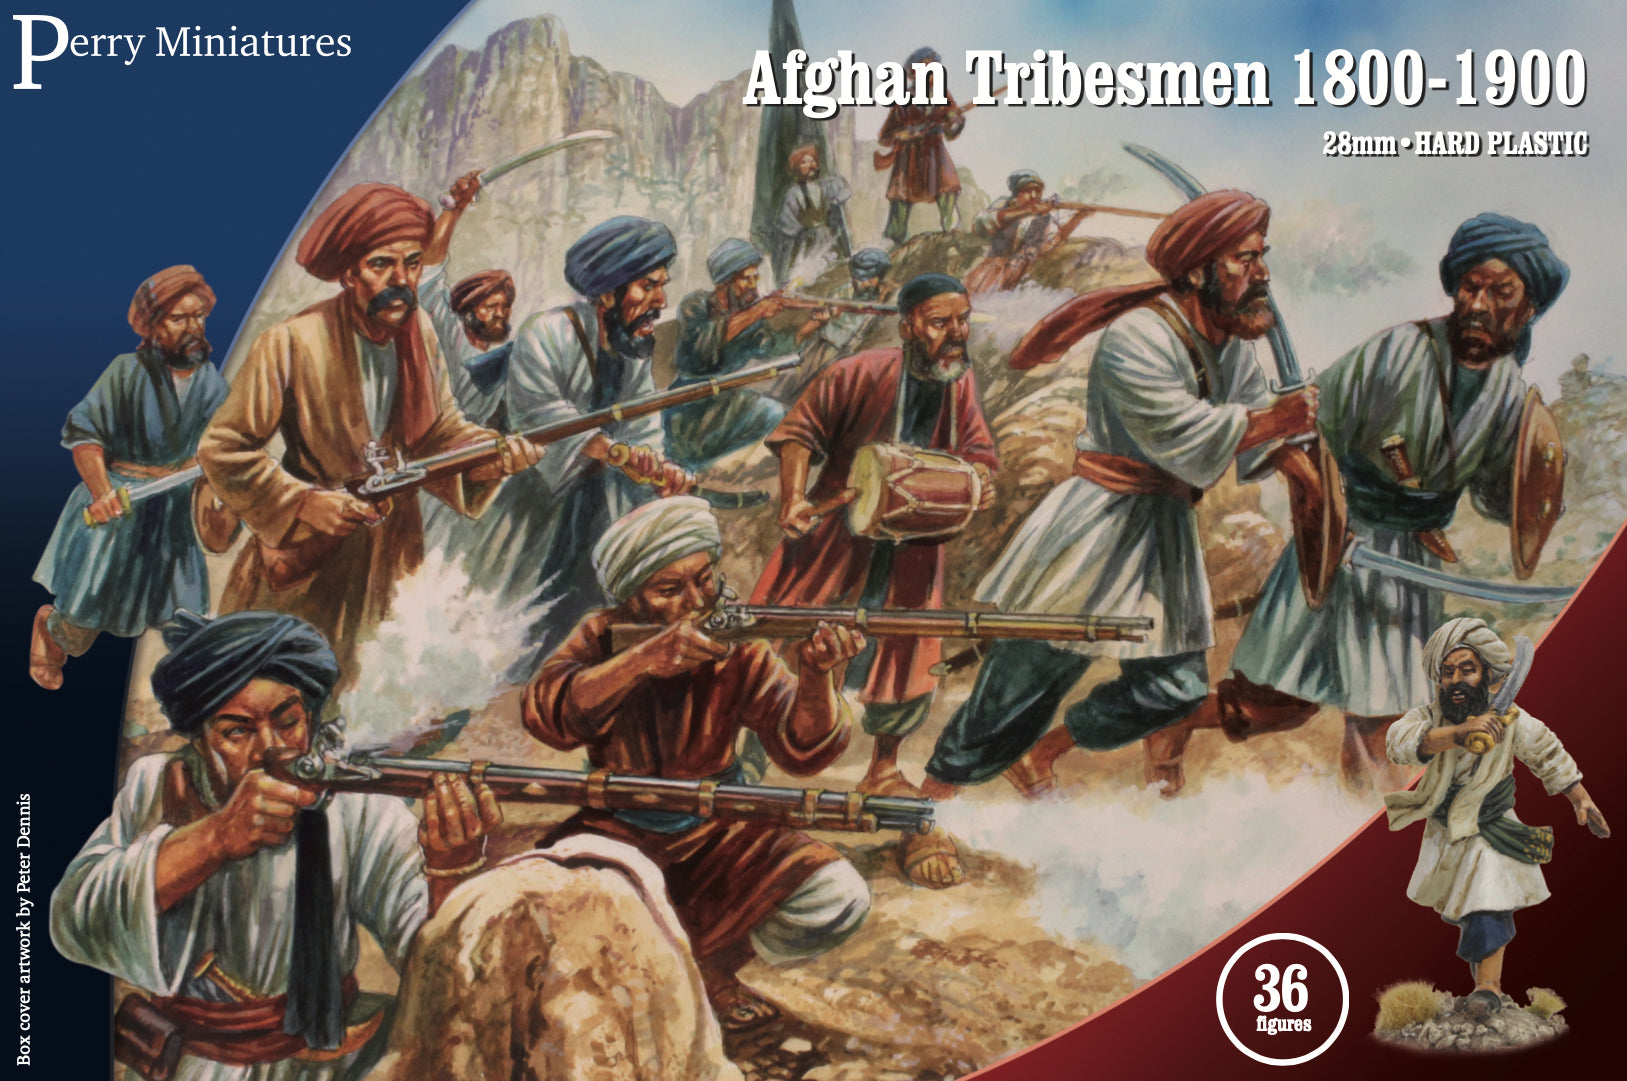 Afghan Tribesmen 1800-1900 - Chester Model Centre